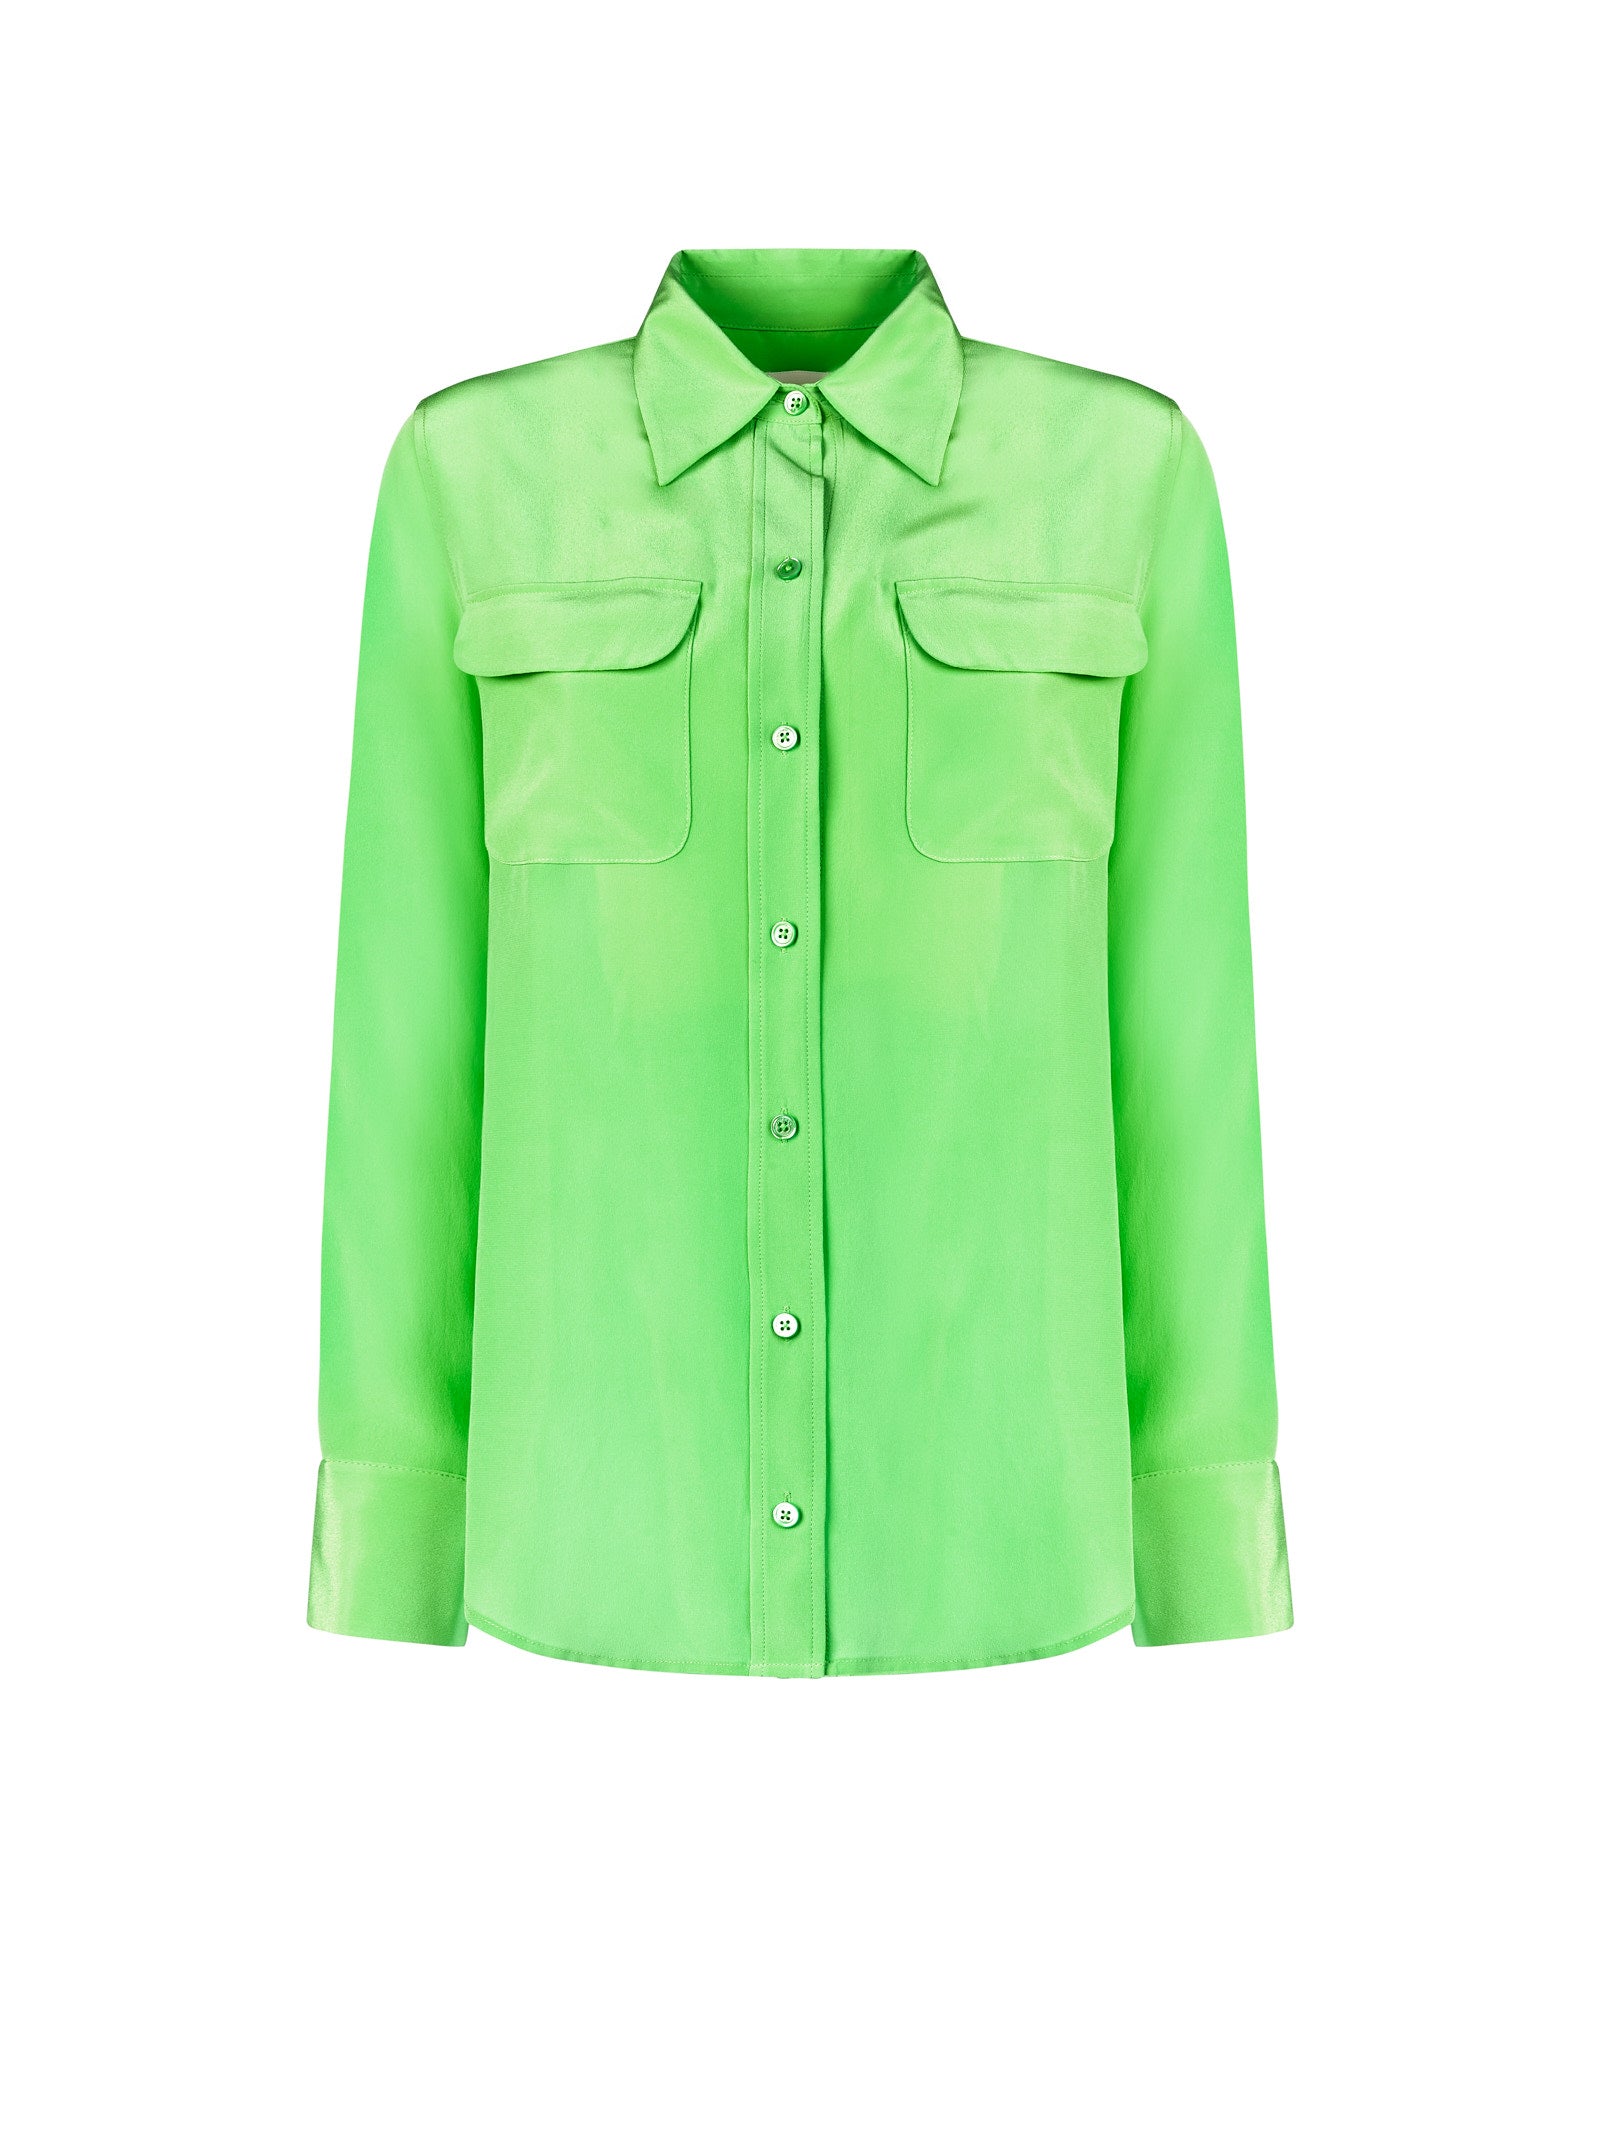 Camicia EQUIPMENT Slim
Verde